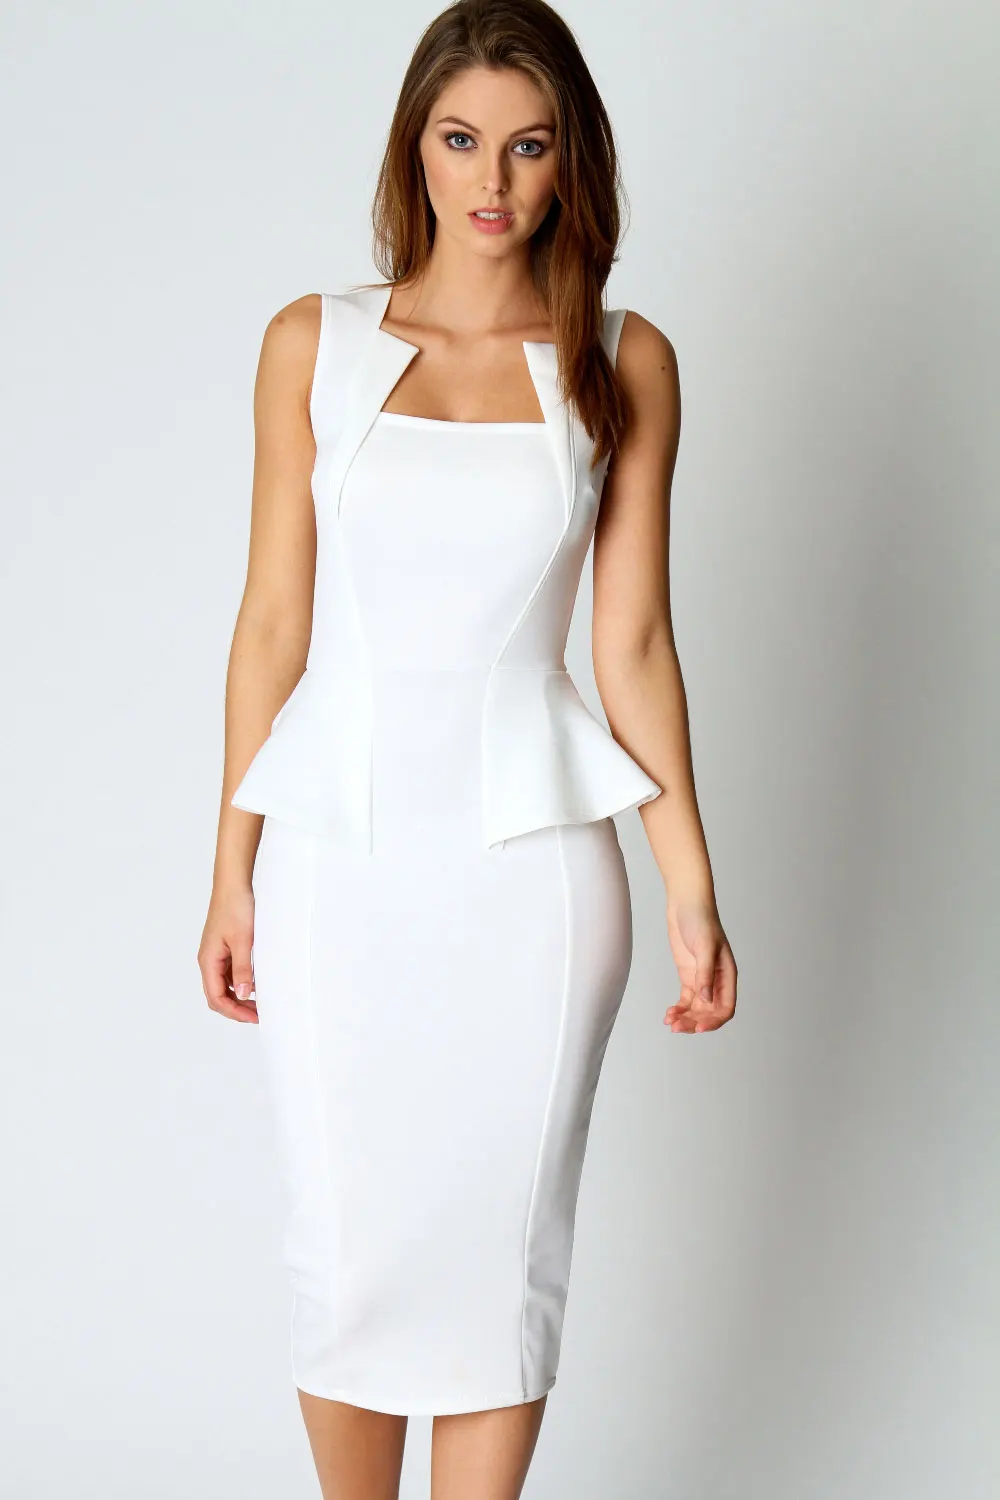 Праздничные белые платья. Белое платье. Белое приталенное платье. Классическое белое платье. Строгое белое платье.